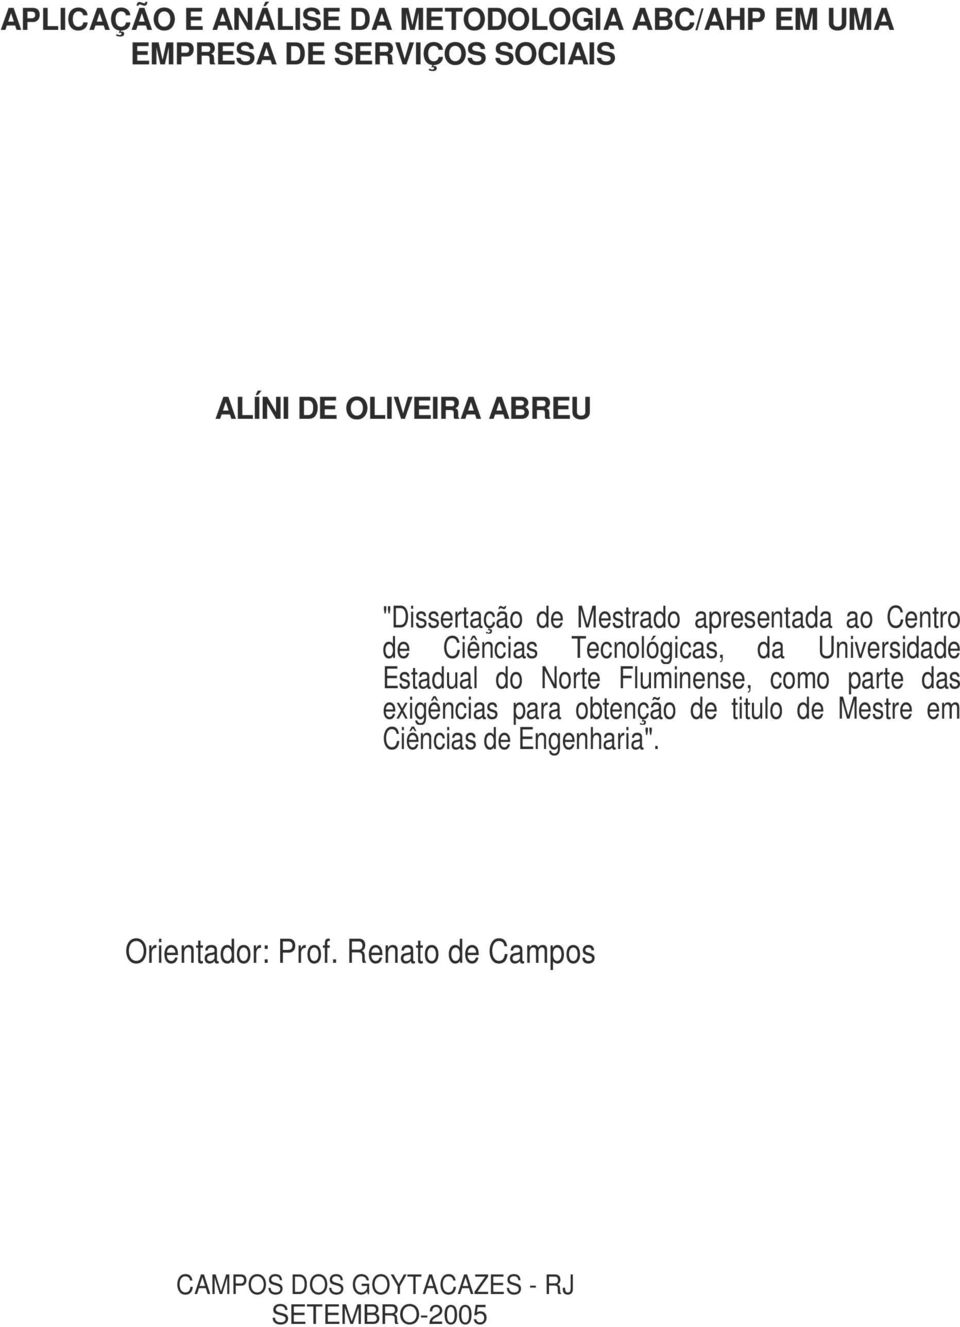 Estadual do Norte Fluminense, como parte das exigências para obtenção de titulo de Mestre em